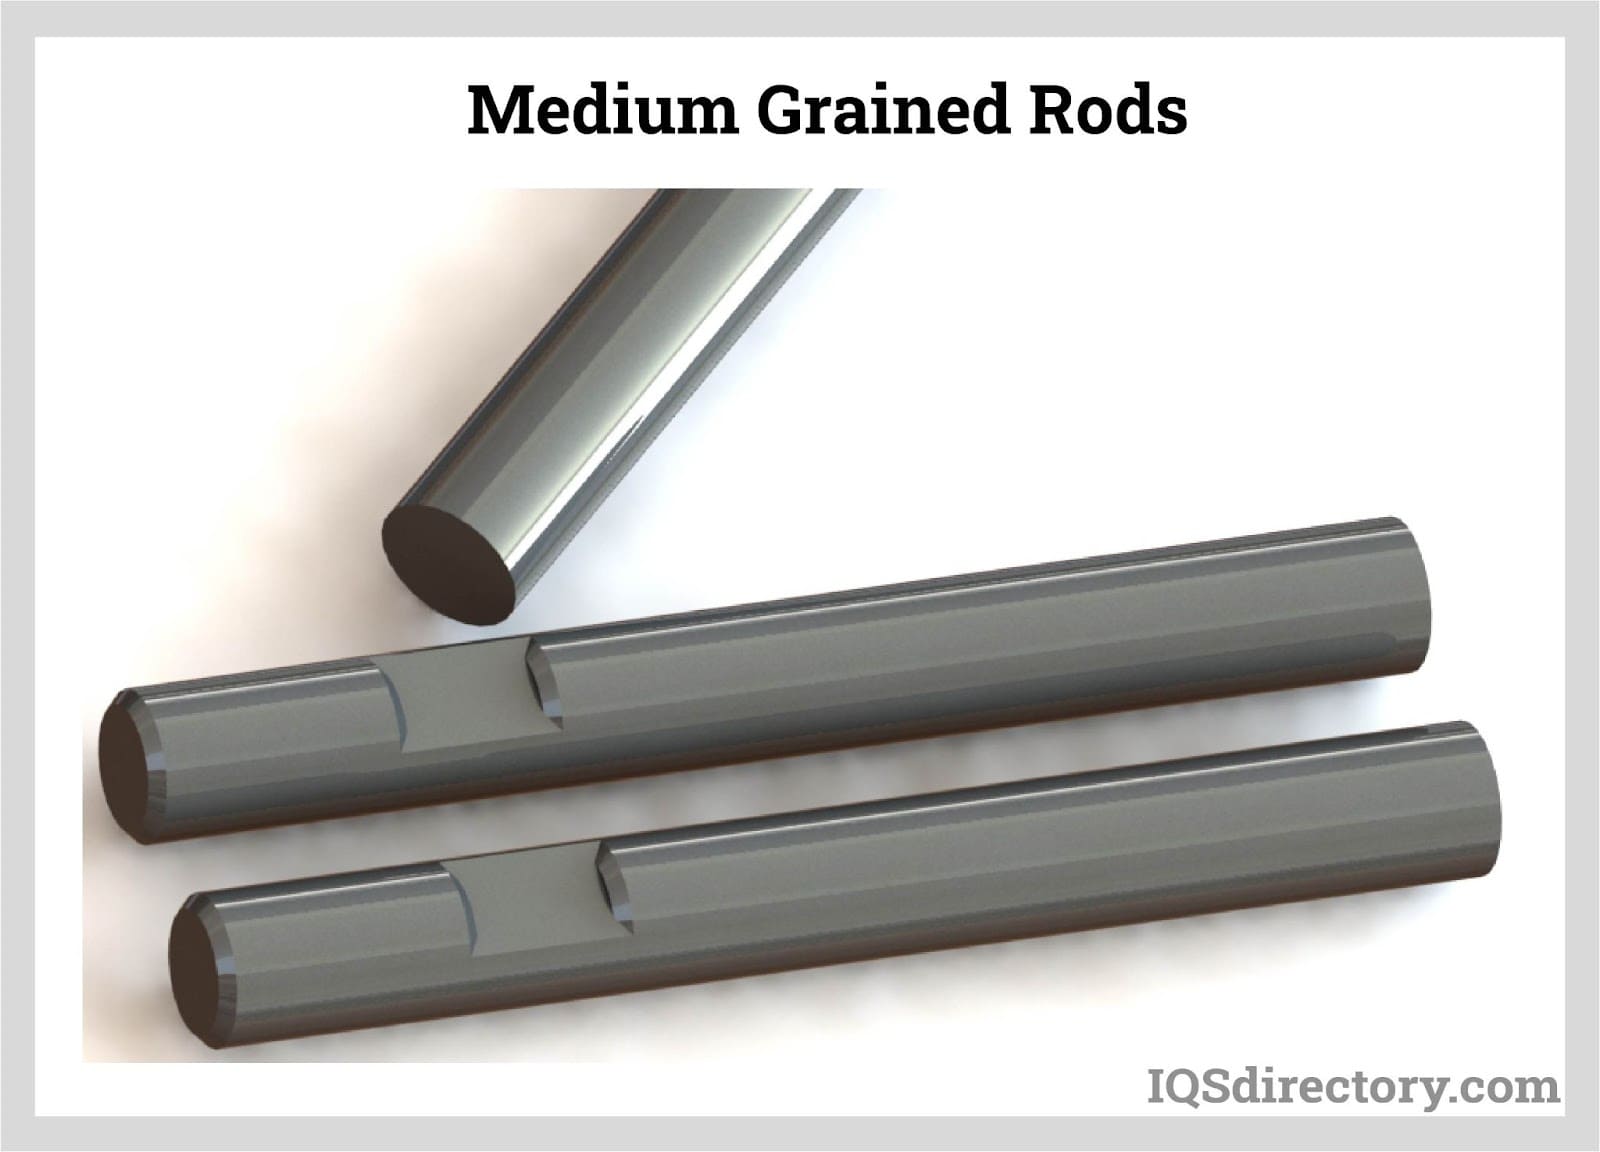 Medium Grained Rods